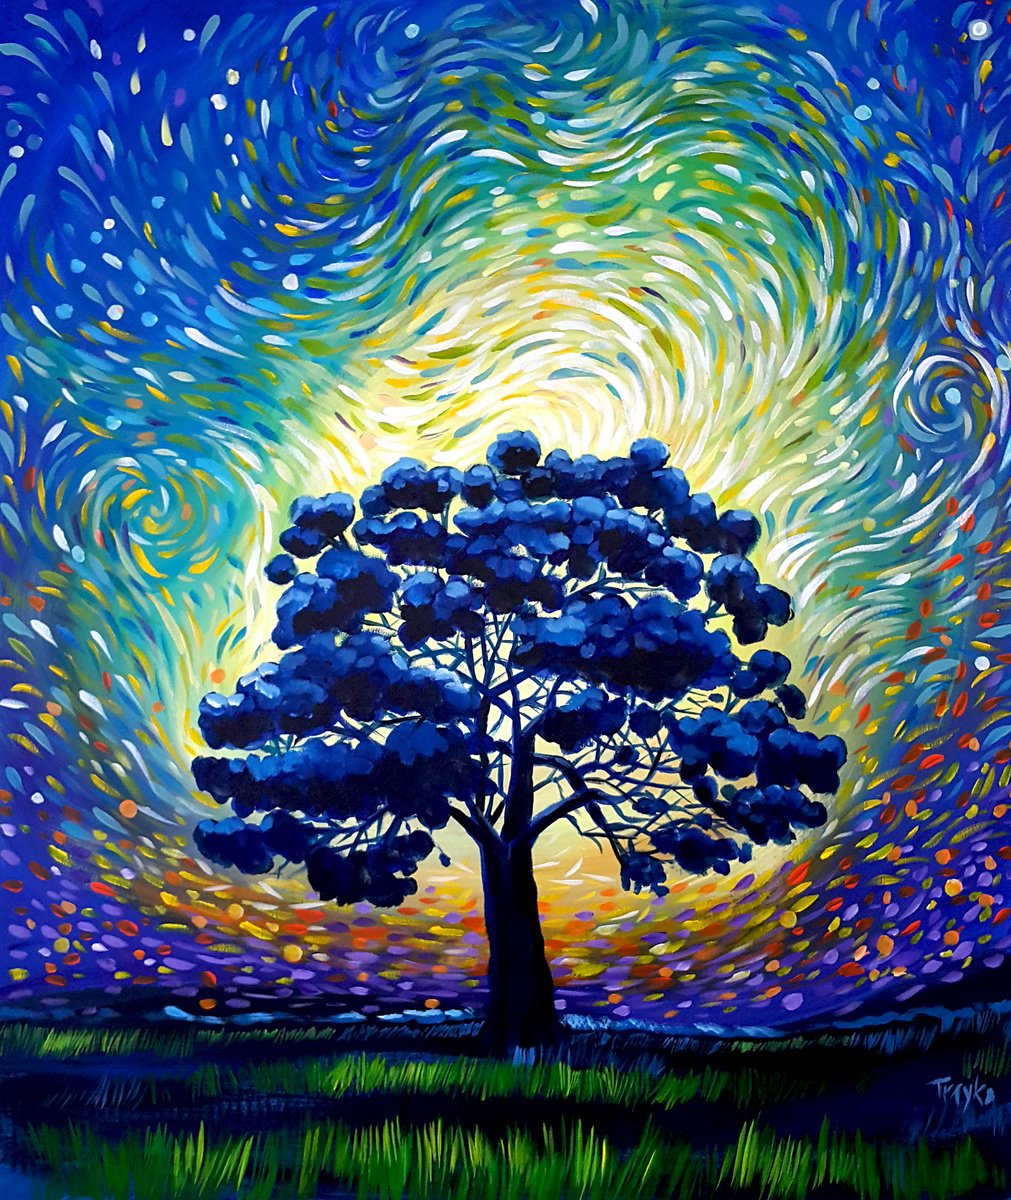 Night Tree by Trayko Popov